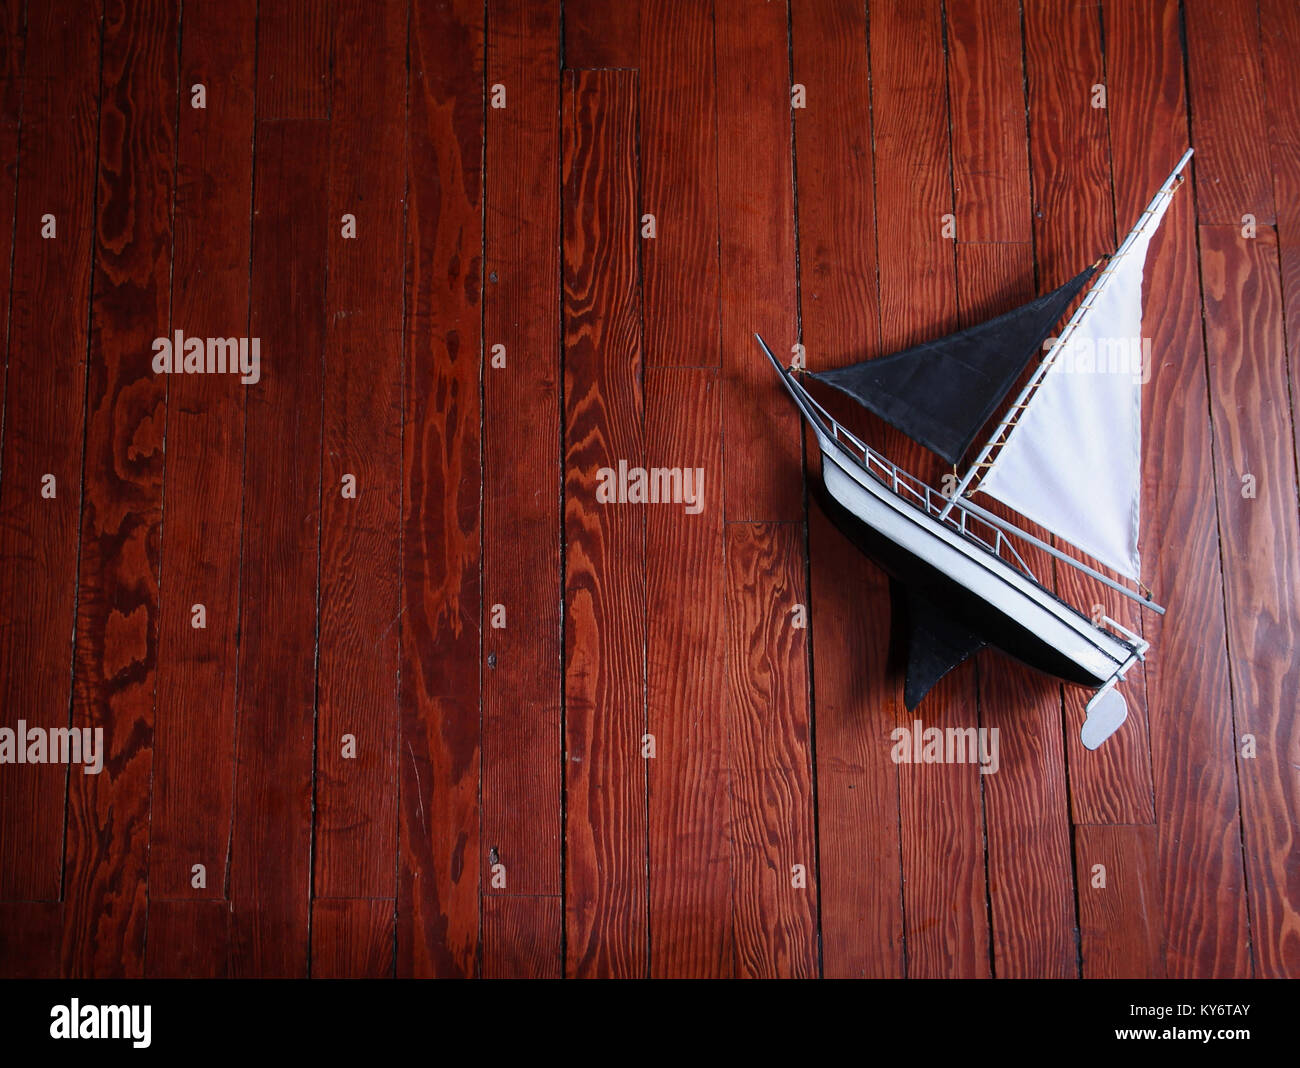 Ein altes Modell Segelschiff aus Holz auf einem Hartholzboden mit dramatischen Beleuchtung abgeschwächt mit einem Vintage Retro instagram Filterwirkung app oder Aktion Stockfoto